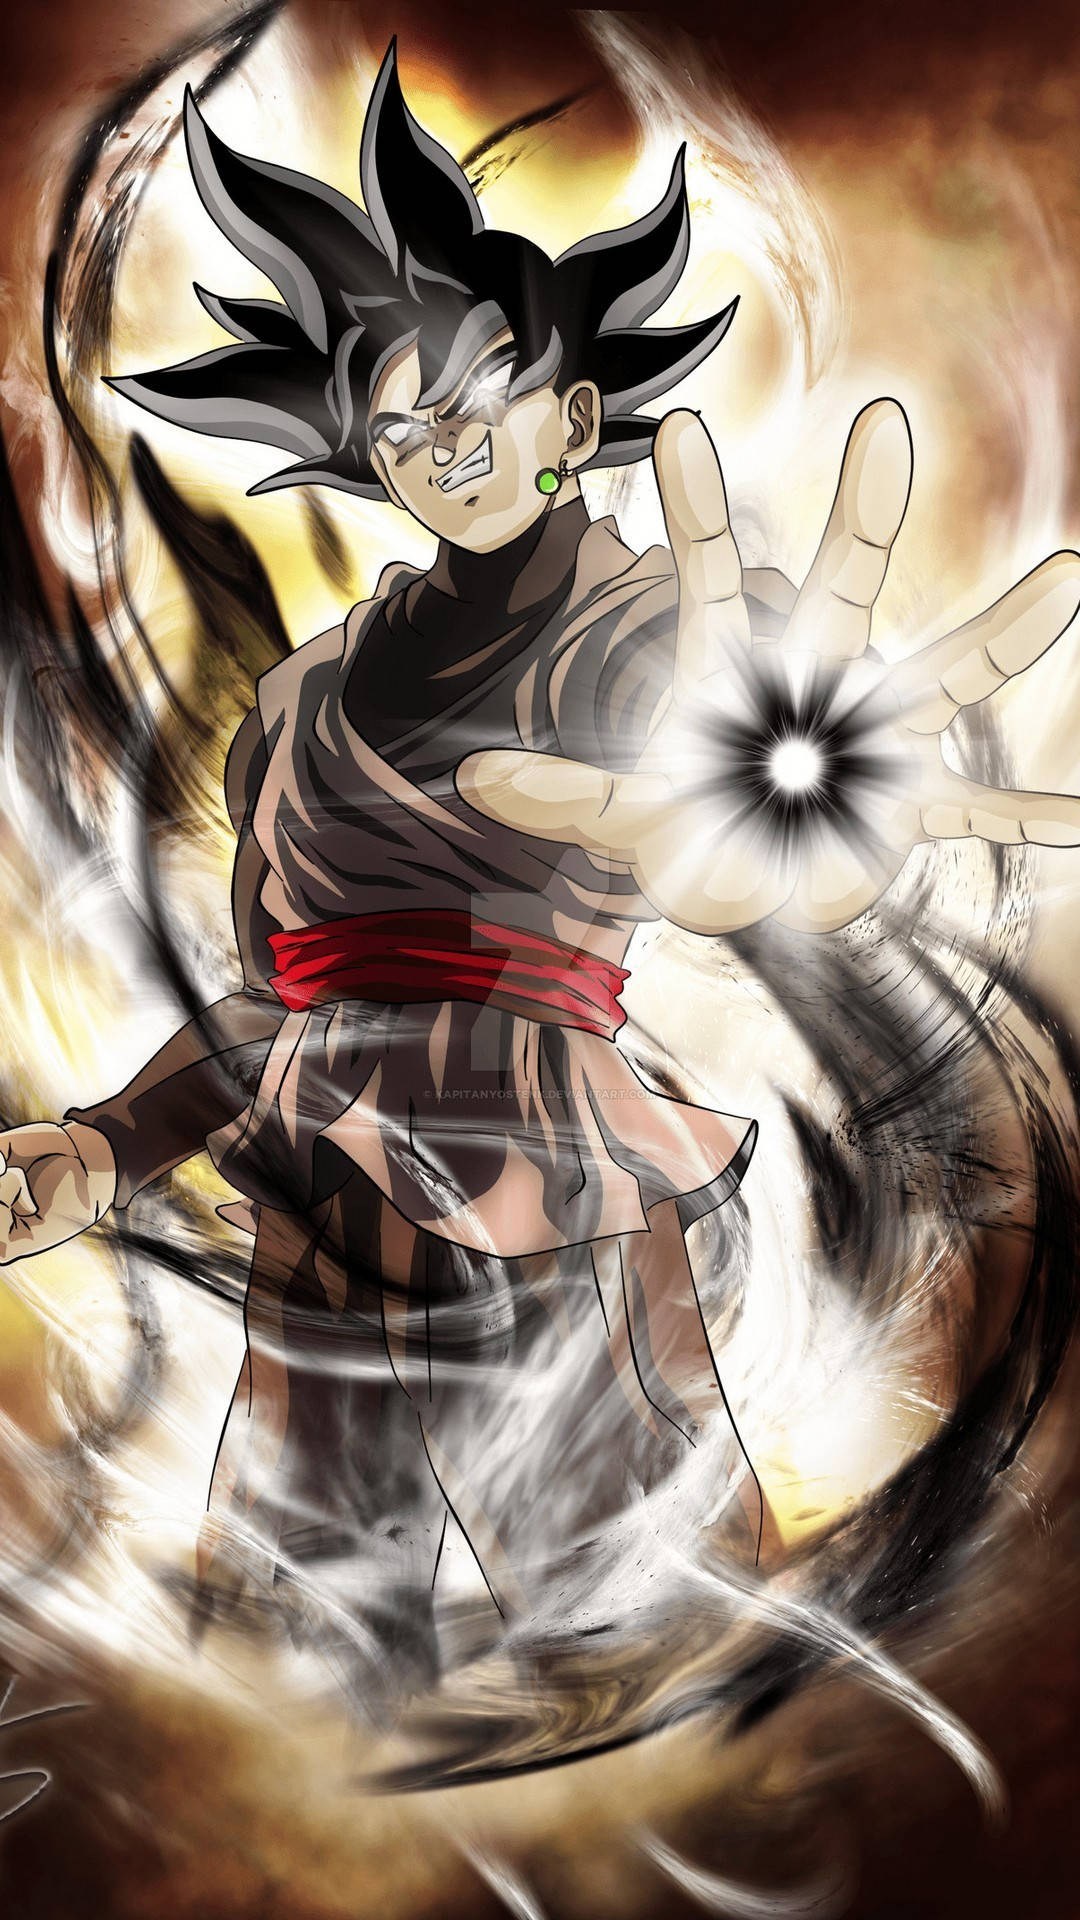 Dark Aura là một trong những yếu tố nổi bật nhất của Black Goku. Bạn có thể tải hình nền Dark Aura của Black Goku cho điện thoại của mình để sở hữu một phần của sức mạnh ám ảnh của nhân vật này.